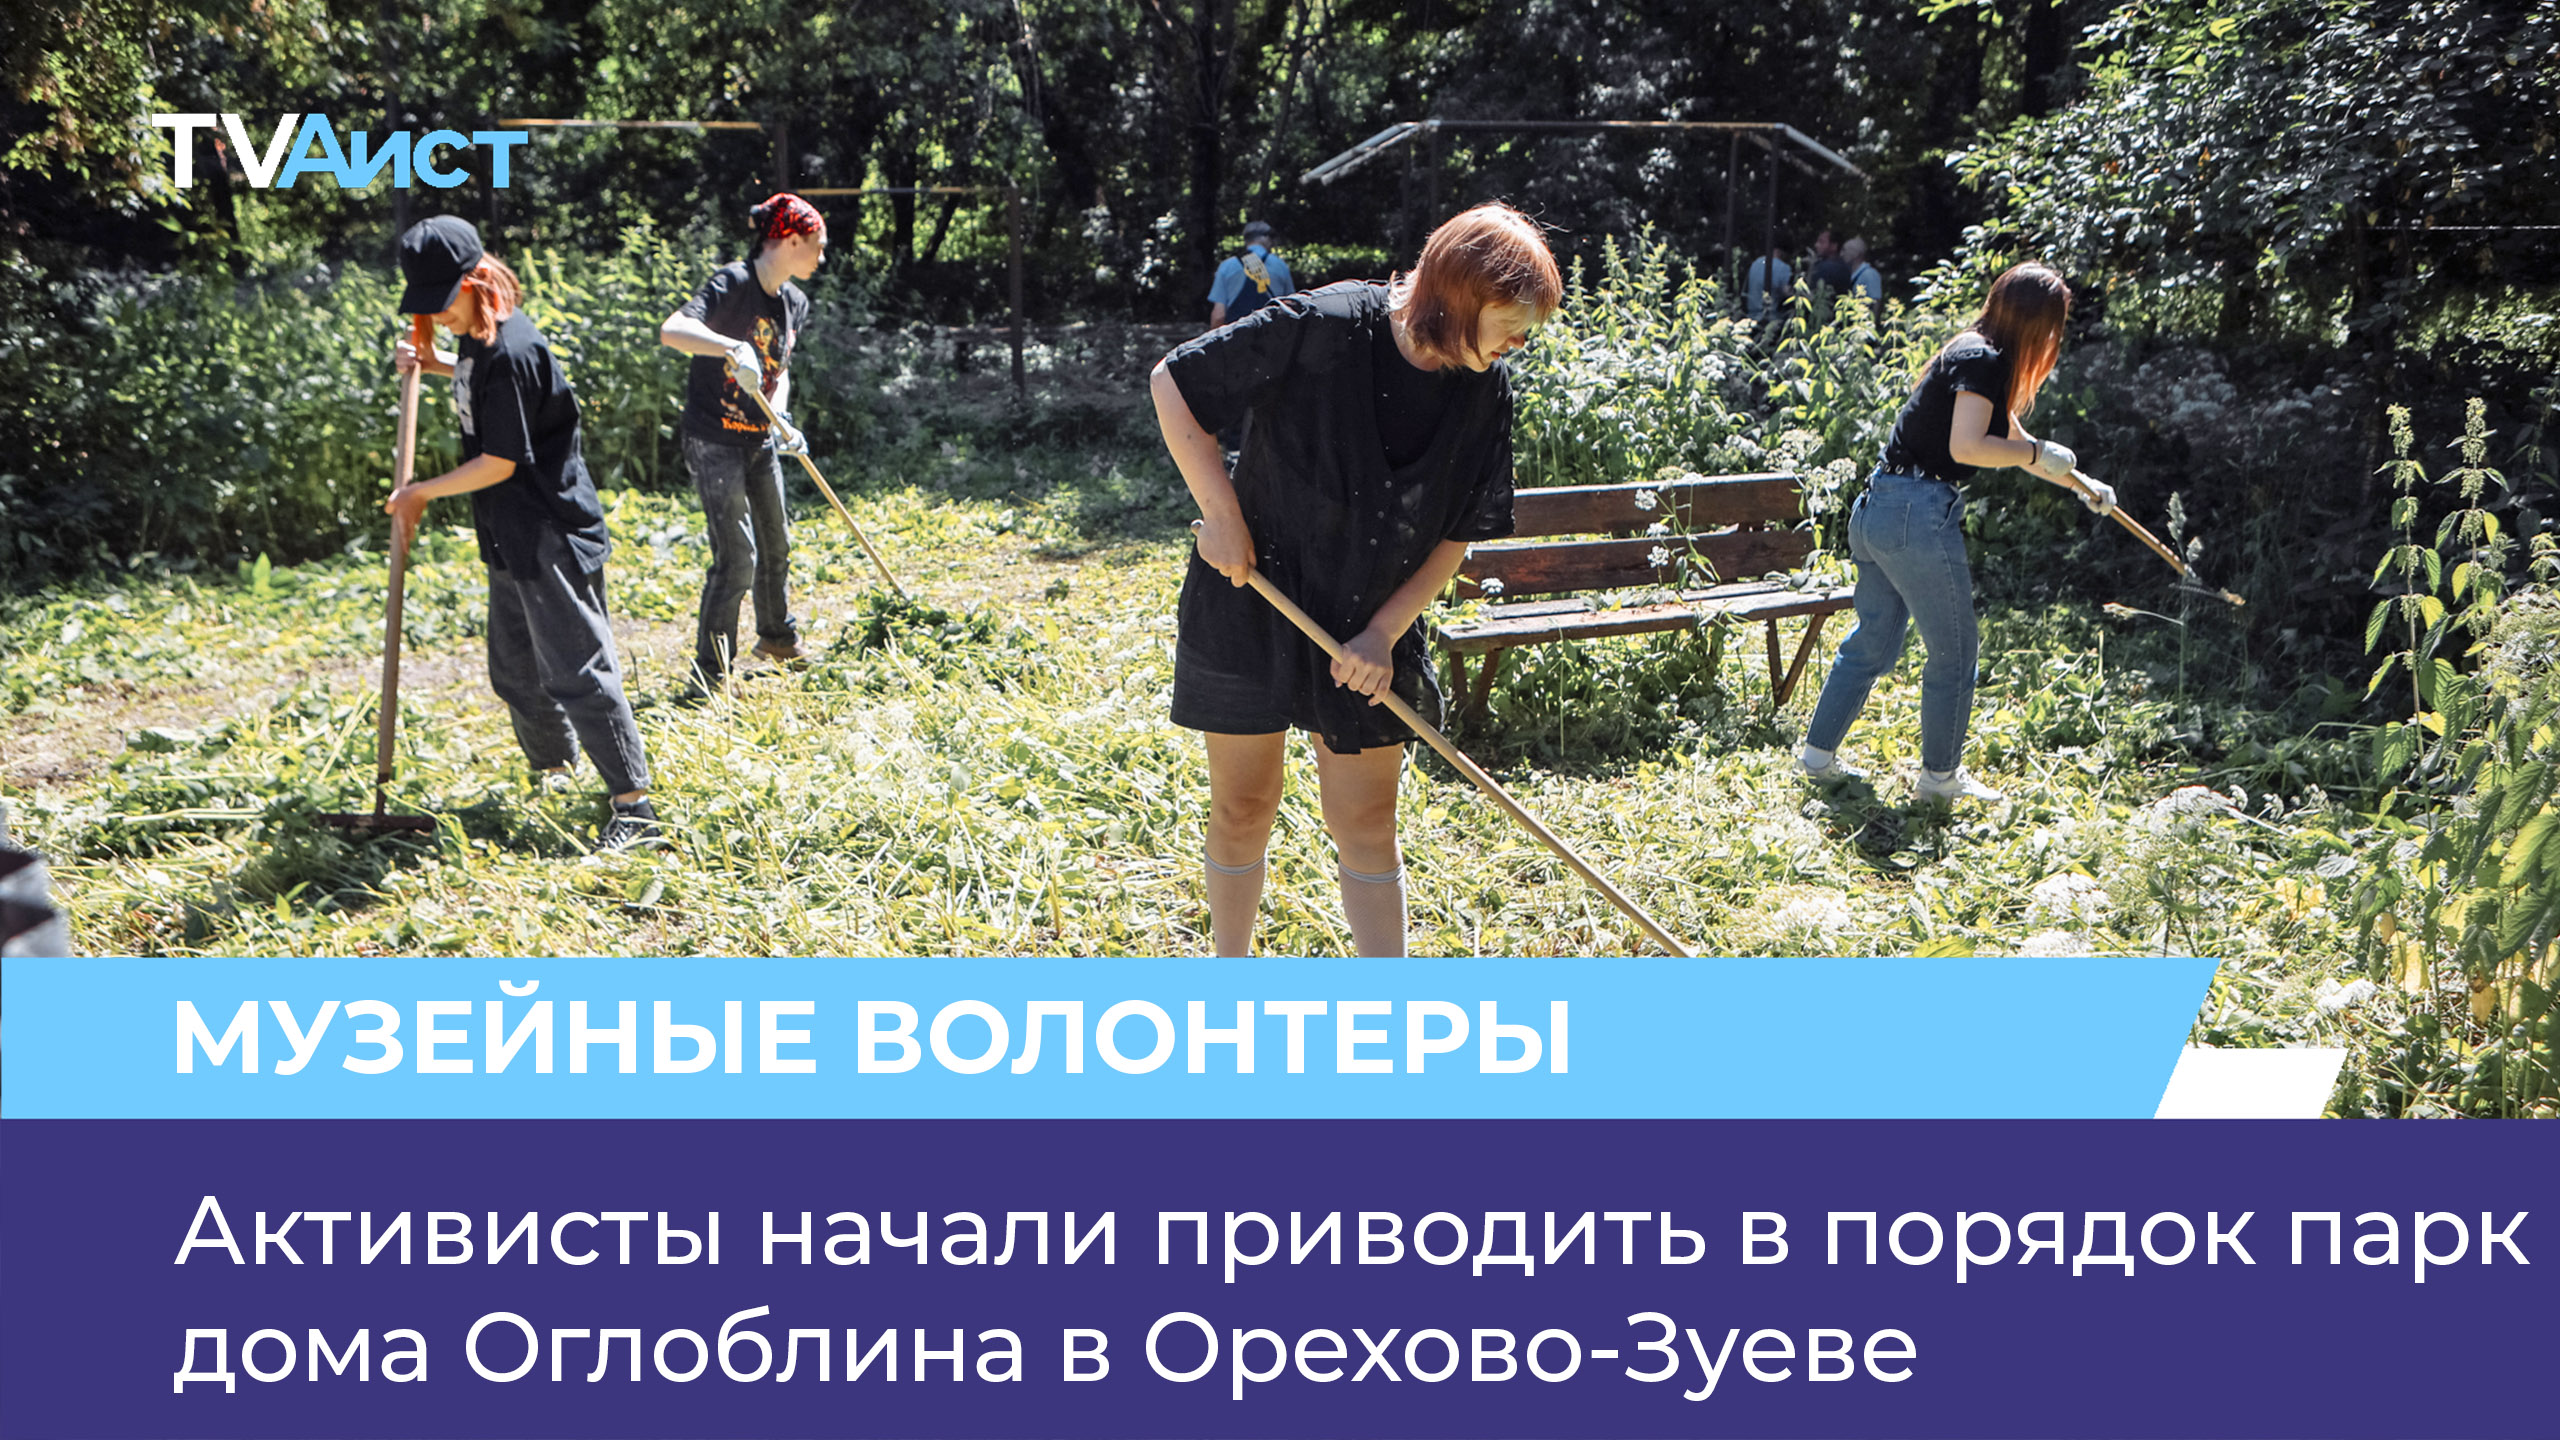 Активисты начали приводить в порядок парк дома Оглоблина в Орехово-Зуеве